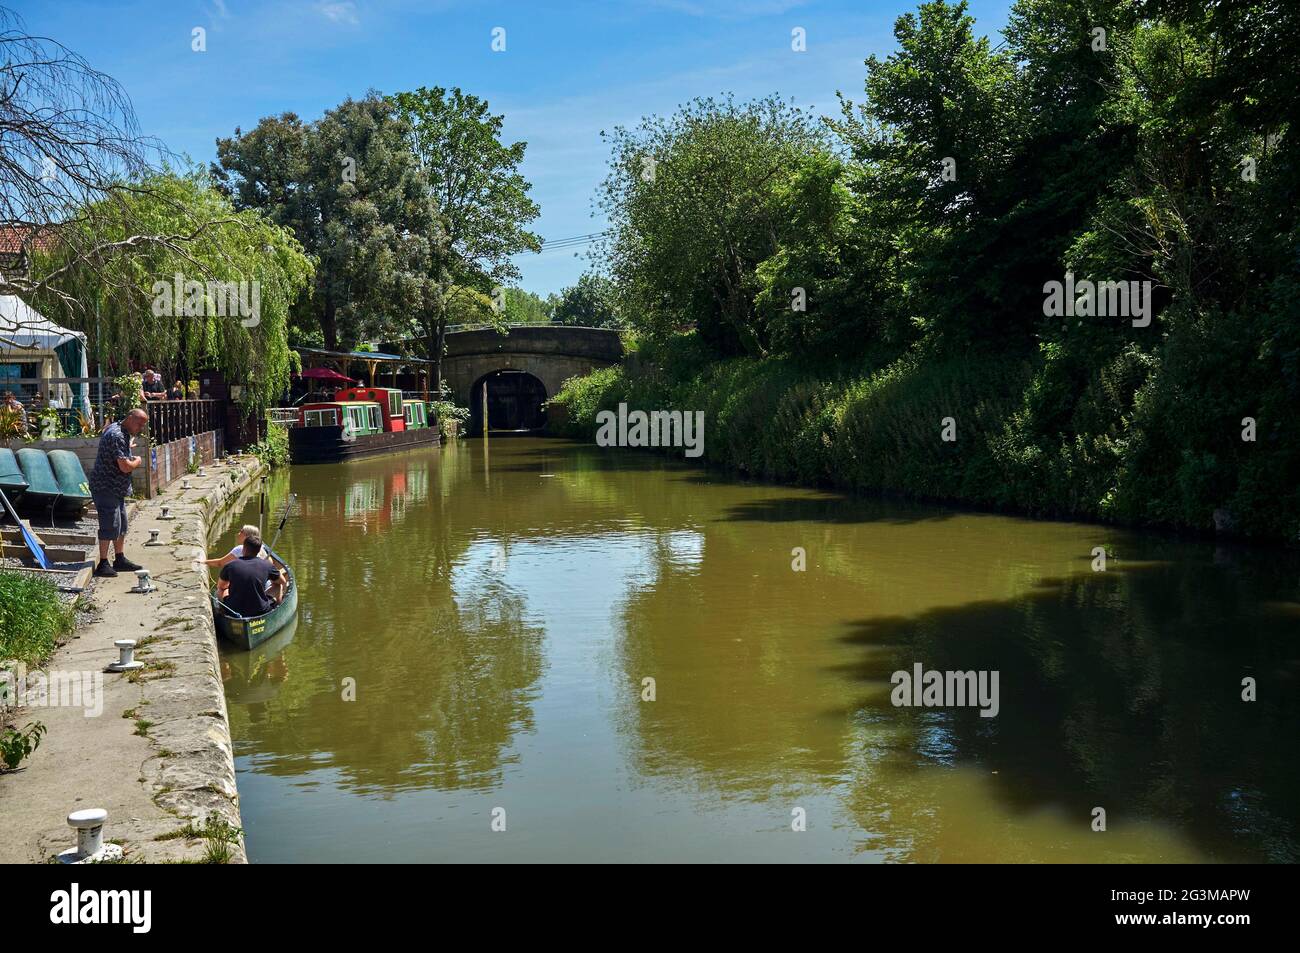 Bateaux amarrés sur le canal Kennet & Avon, à Bradford upon Avon, sud-ouest de l'Angleterre, Royaume-Uni Banque D'Images